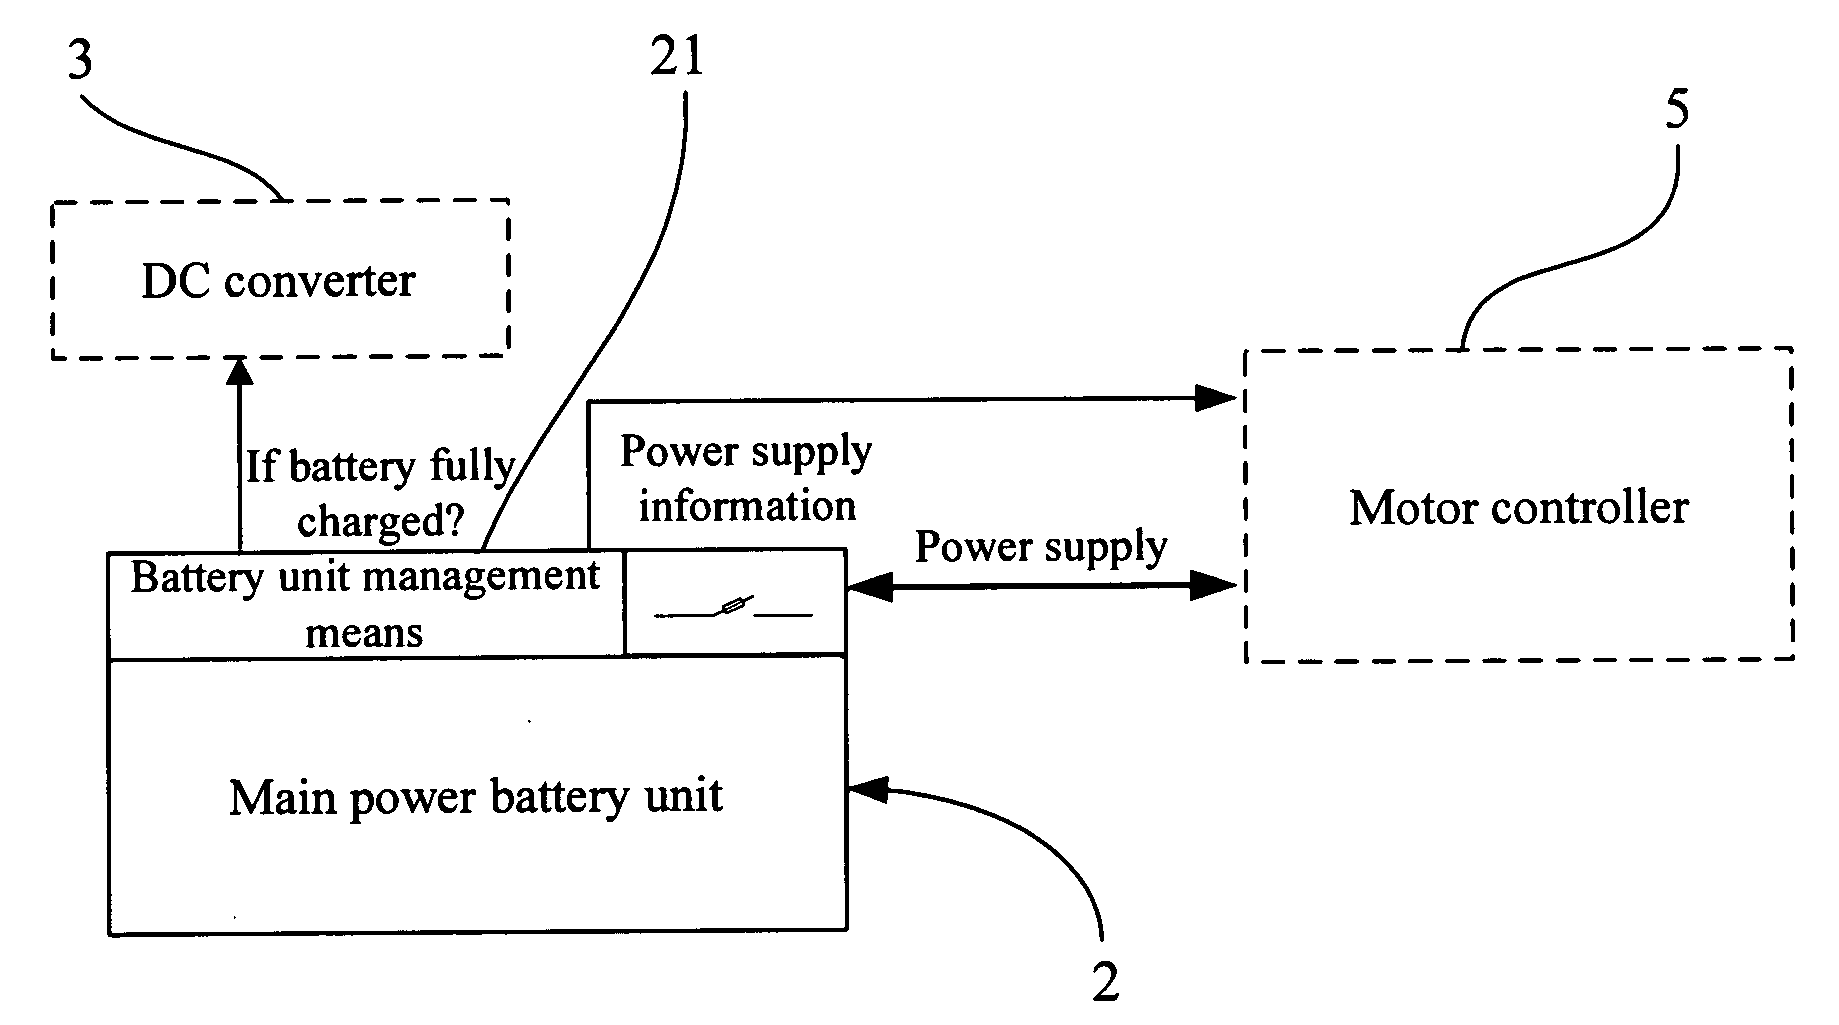 Portable compound battery unit management system